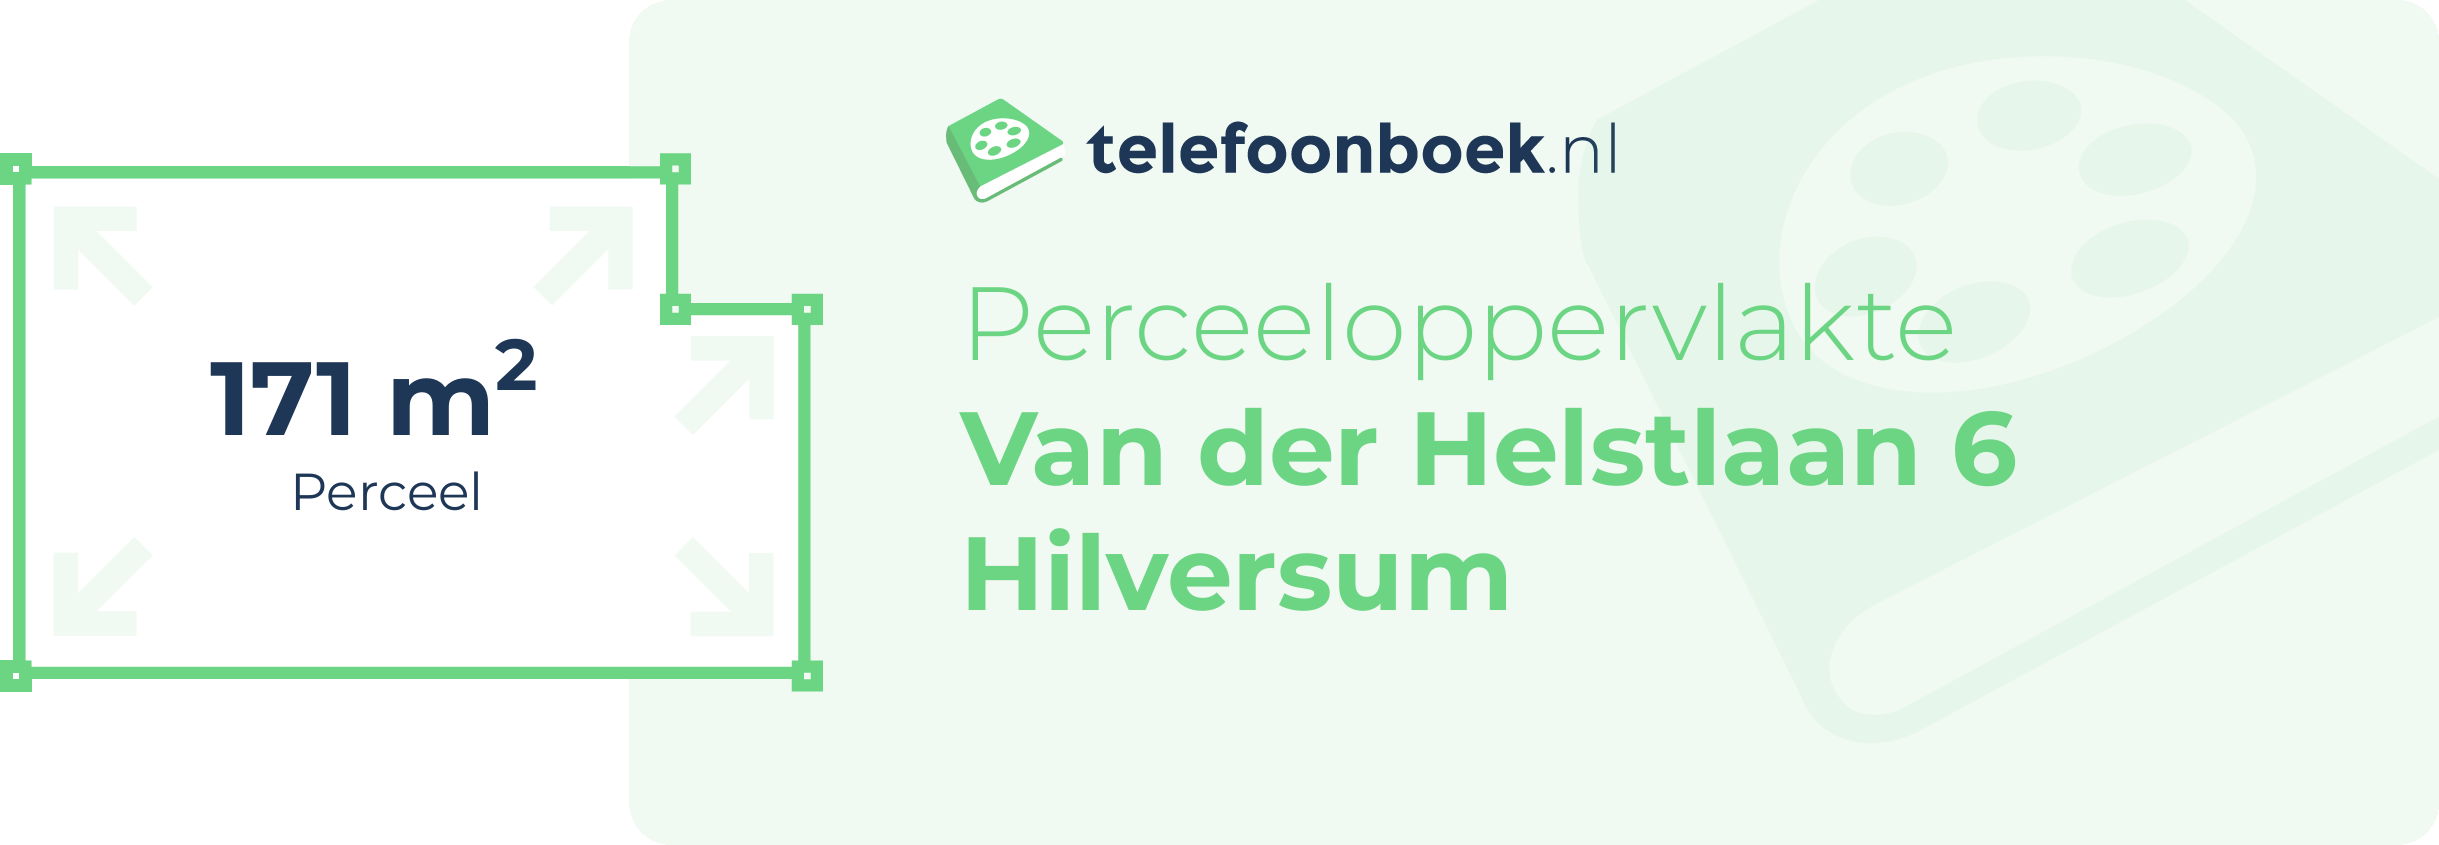 Perceeloppervlakte Van Der Helstlaan 6 Hilversum